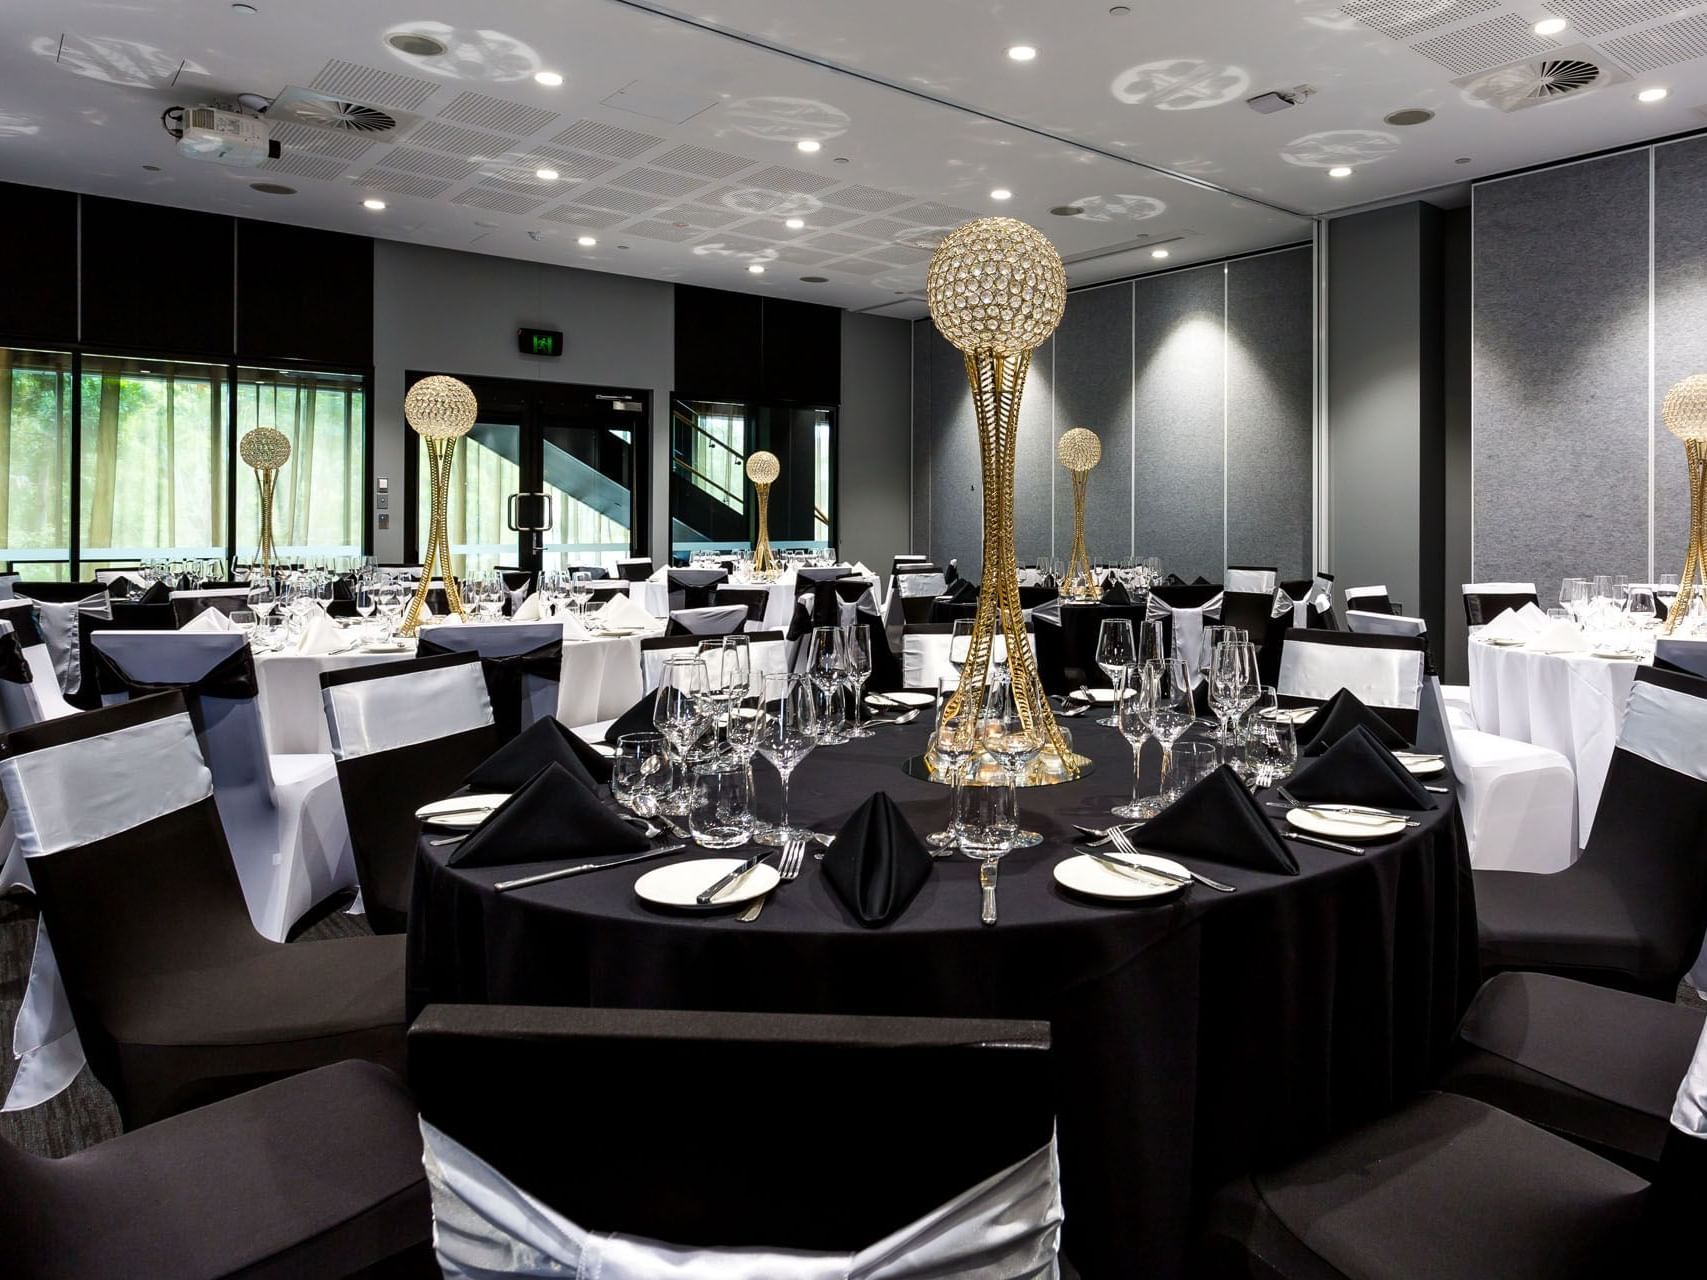 Banquet set-up, Chancellor Ballroom, Grand Chancellor Brisbane